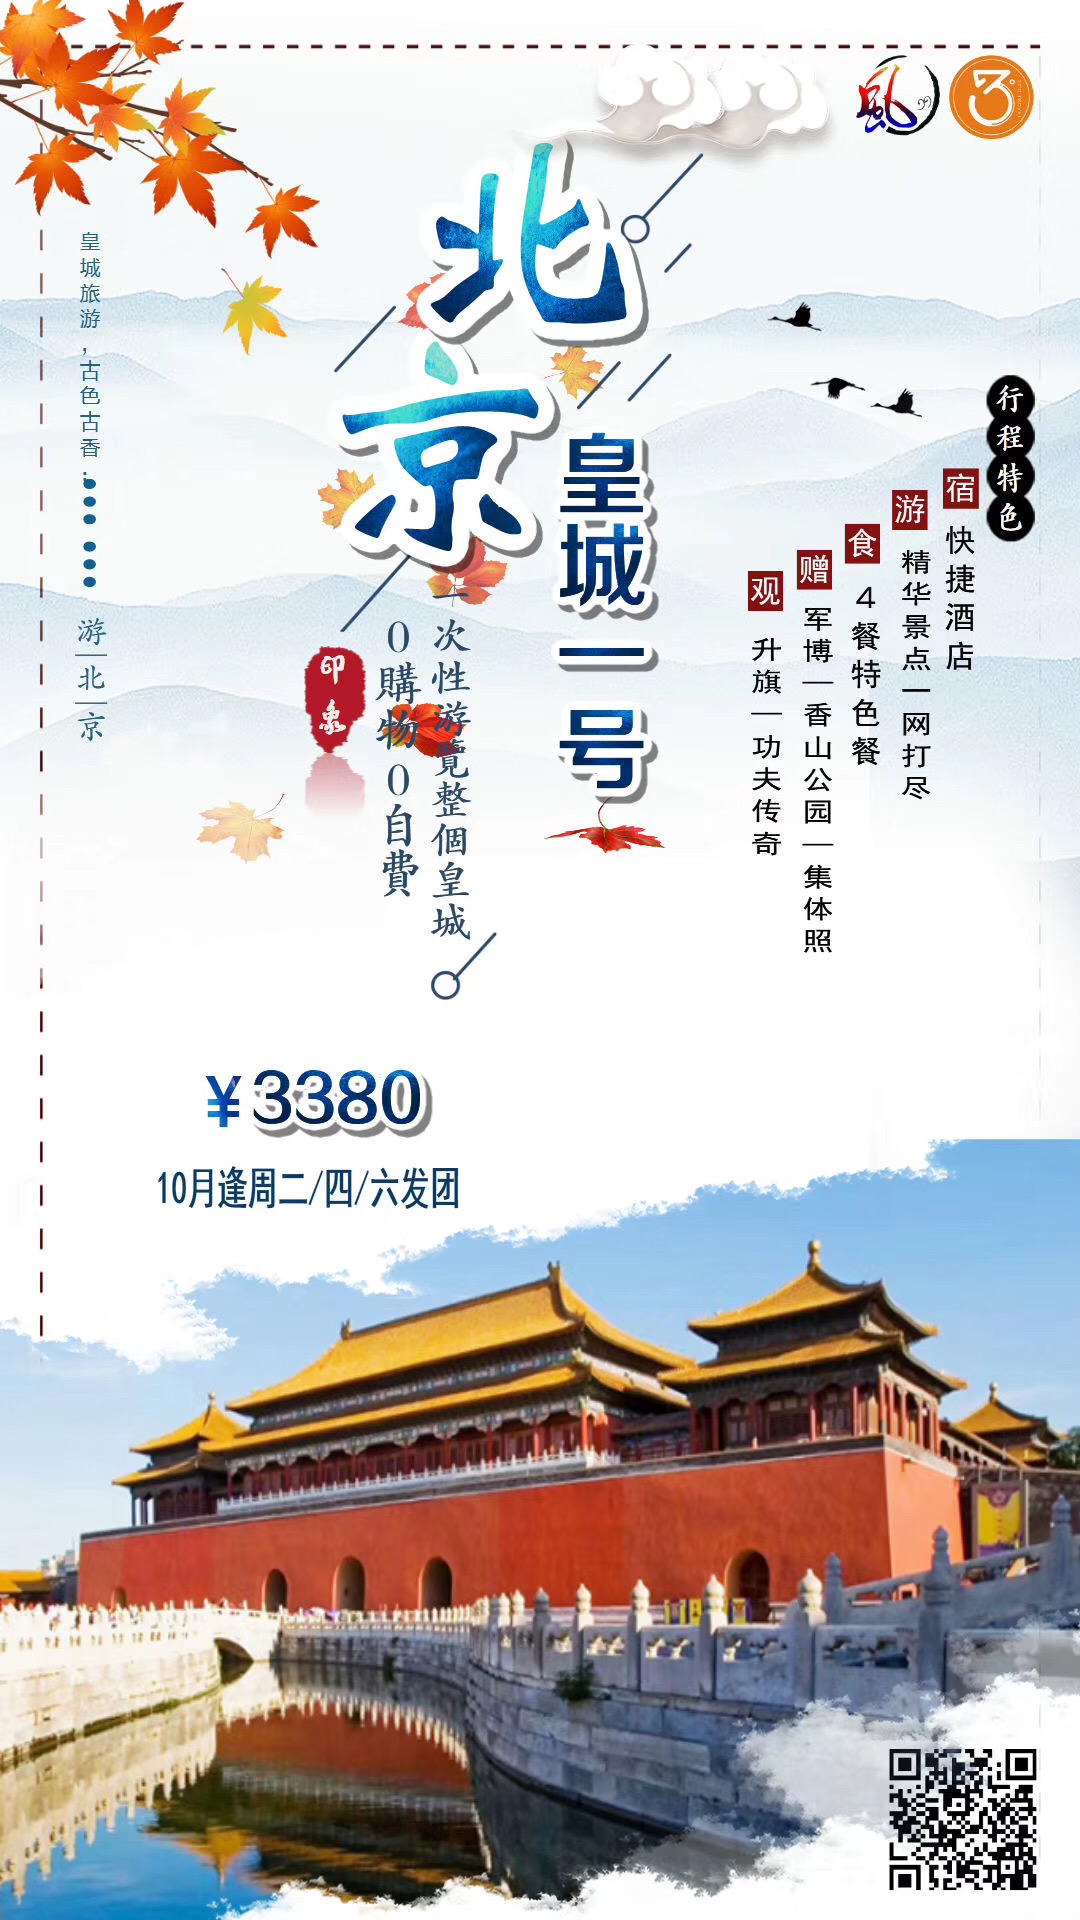 北京旅游团报价 19年10月北京旅游图片海报 厦门国旅官网